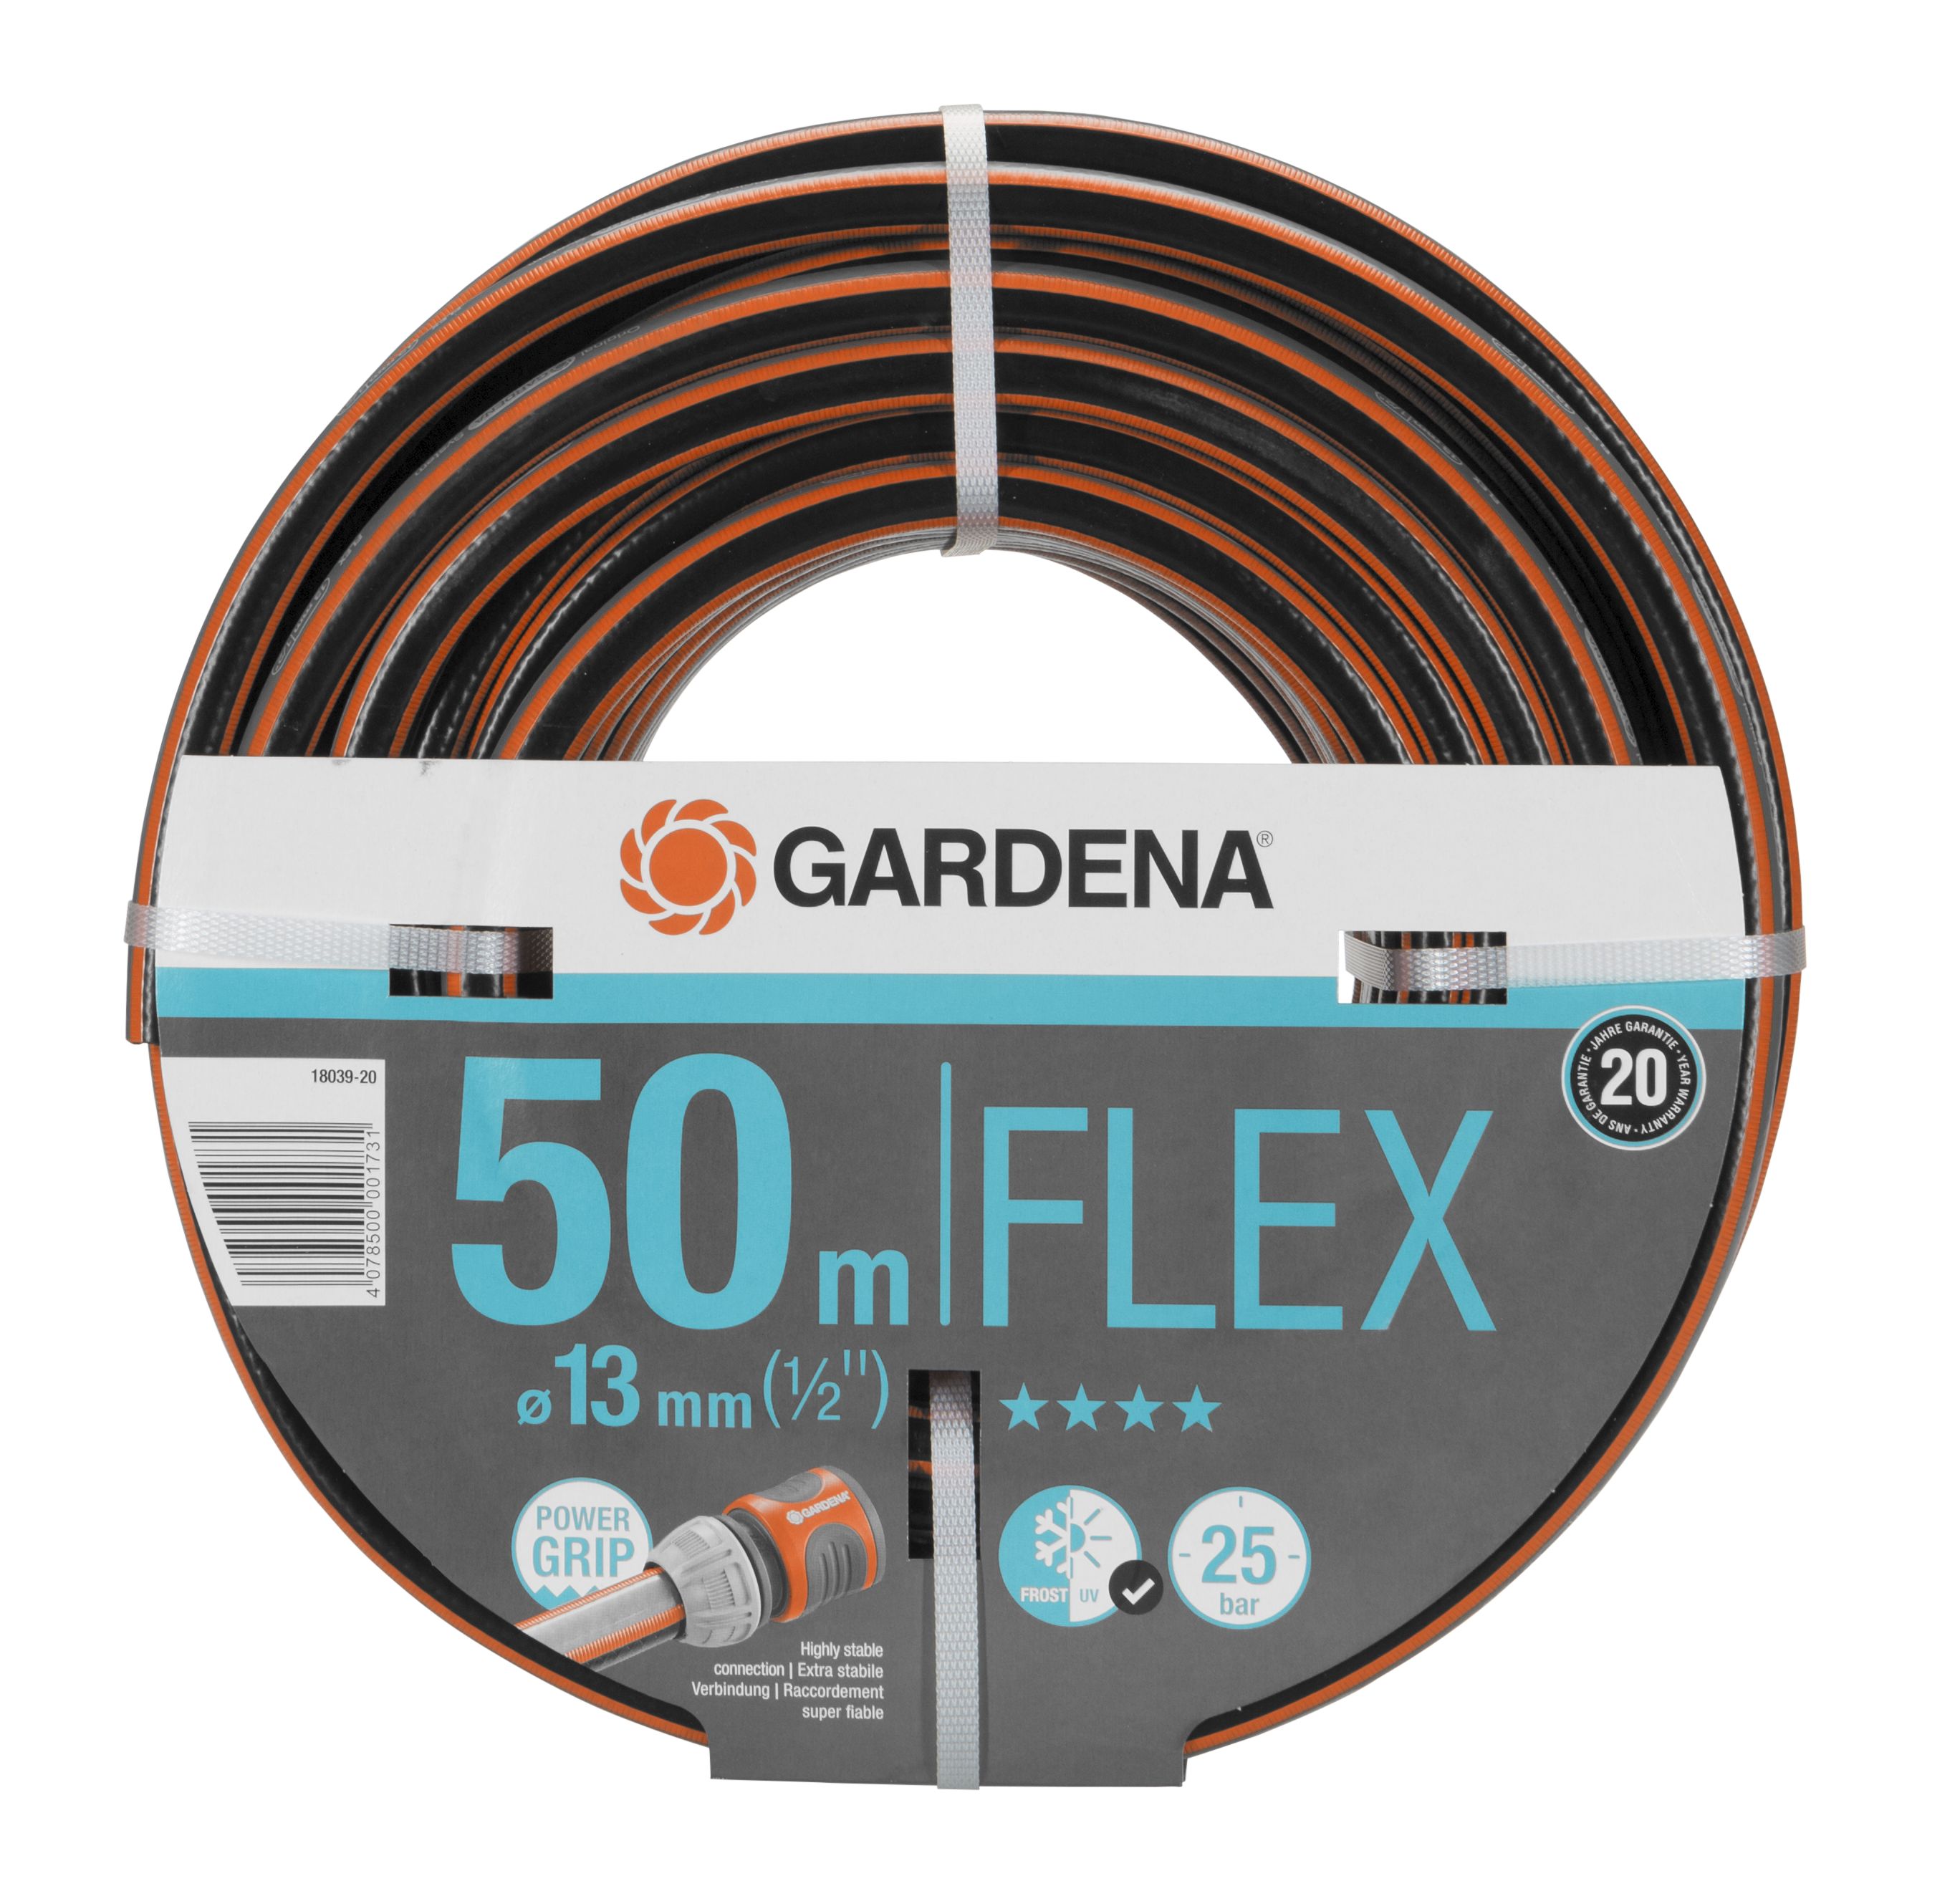 GARDENA Comfort FLEX Schlauch 9 x 9, 13 mm (1/2''), 50 m, ohne Systemteile